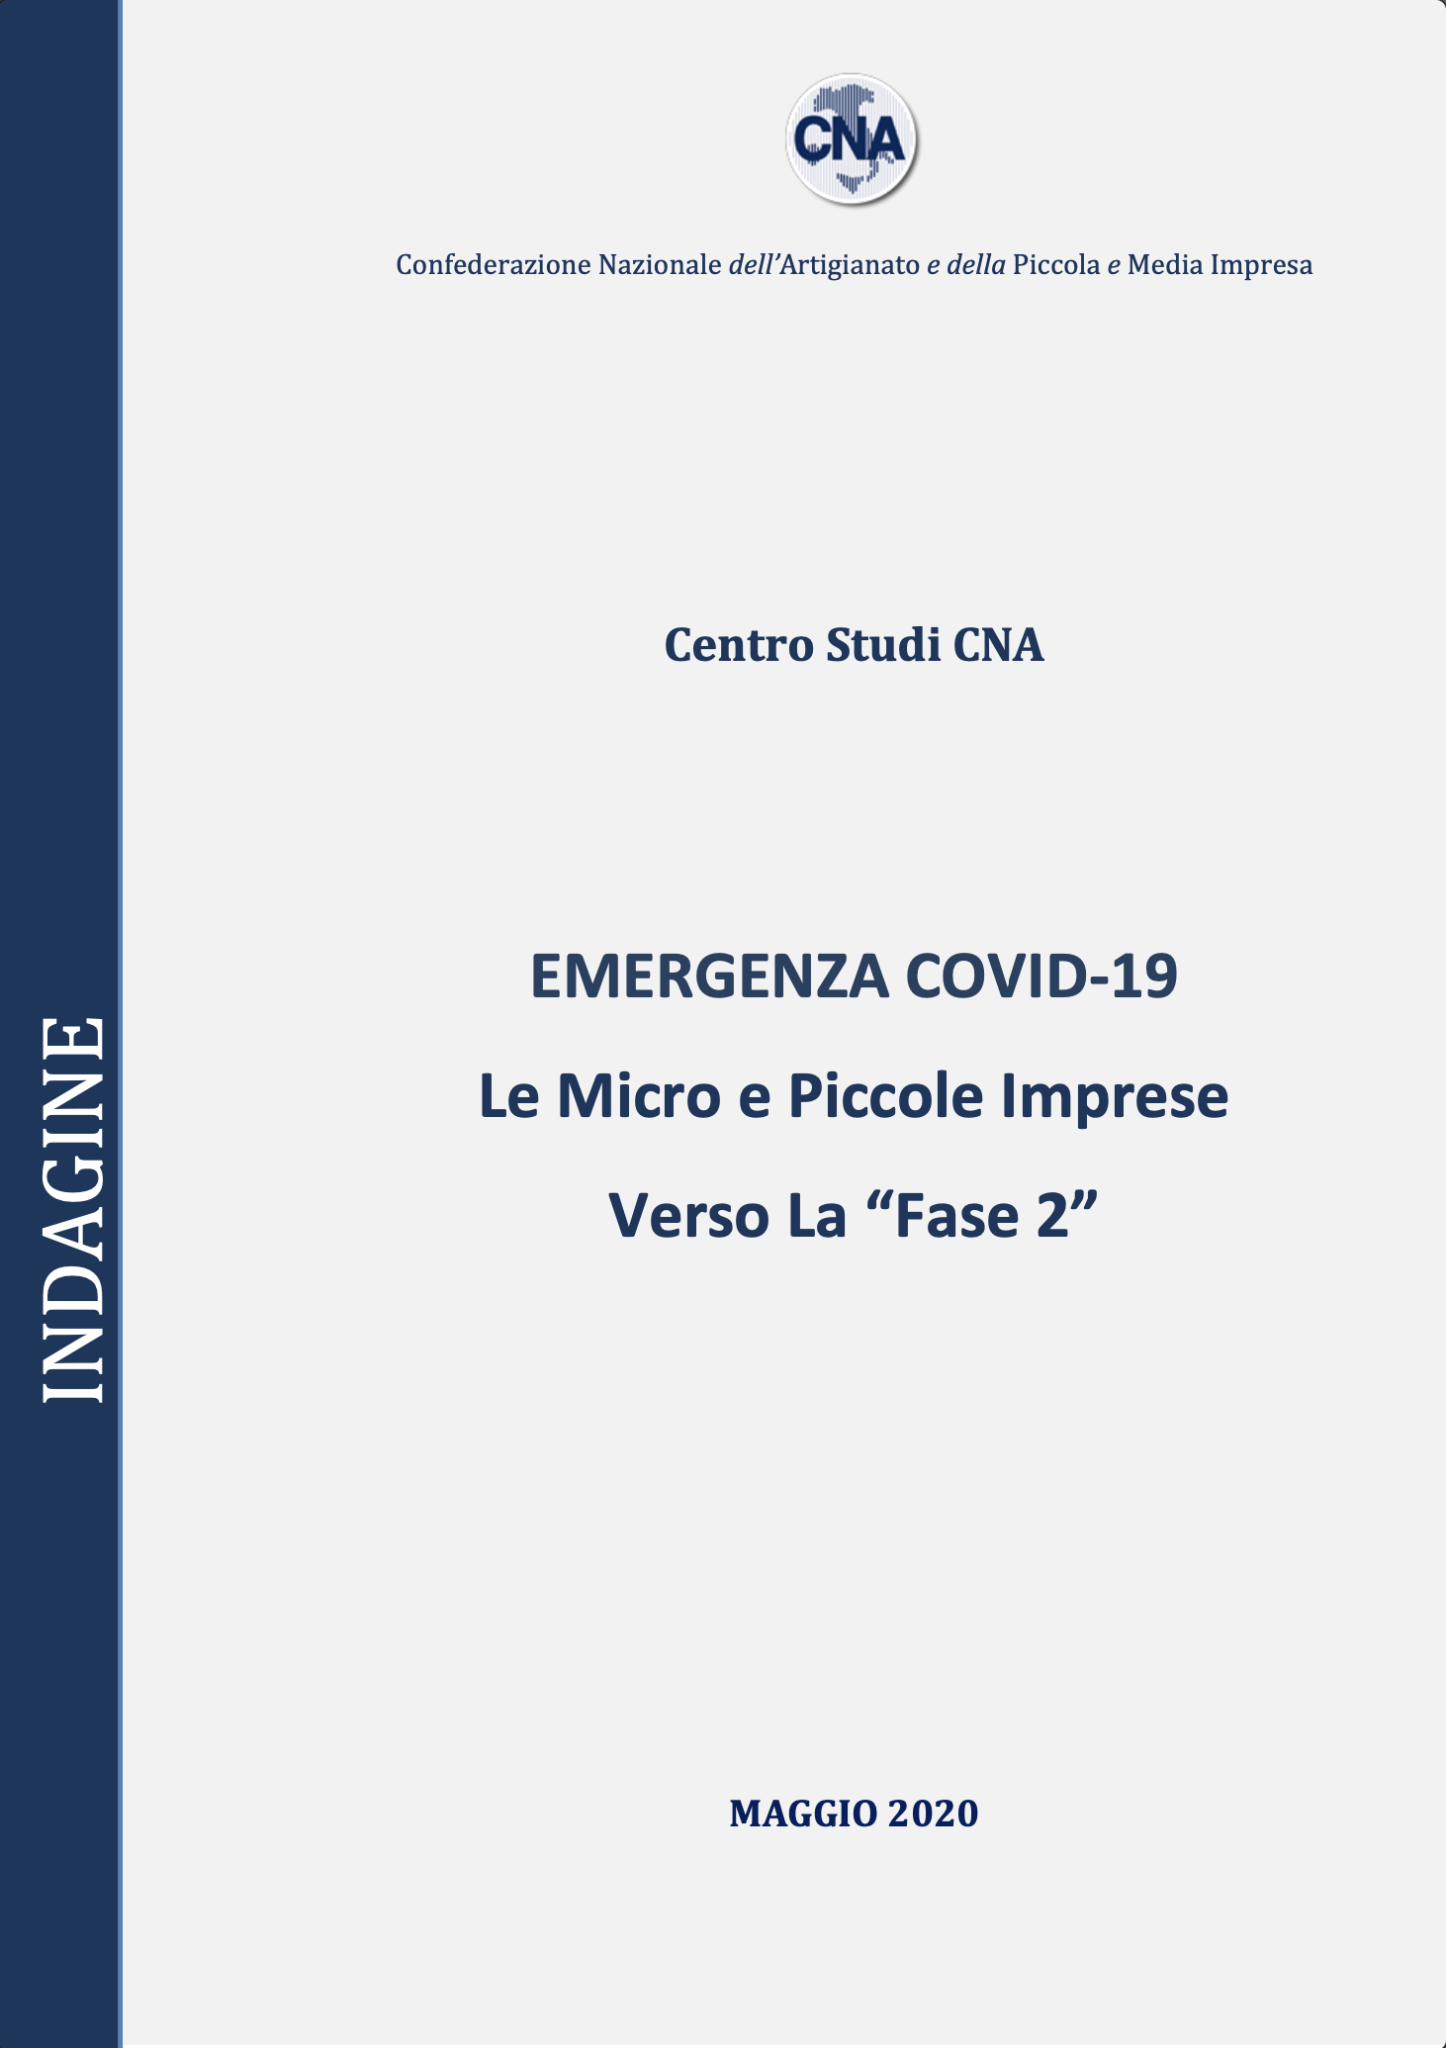 Emergenza Covid-19. Le Micro e Piccole Imprese verso La “Fase 2”